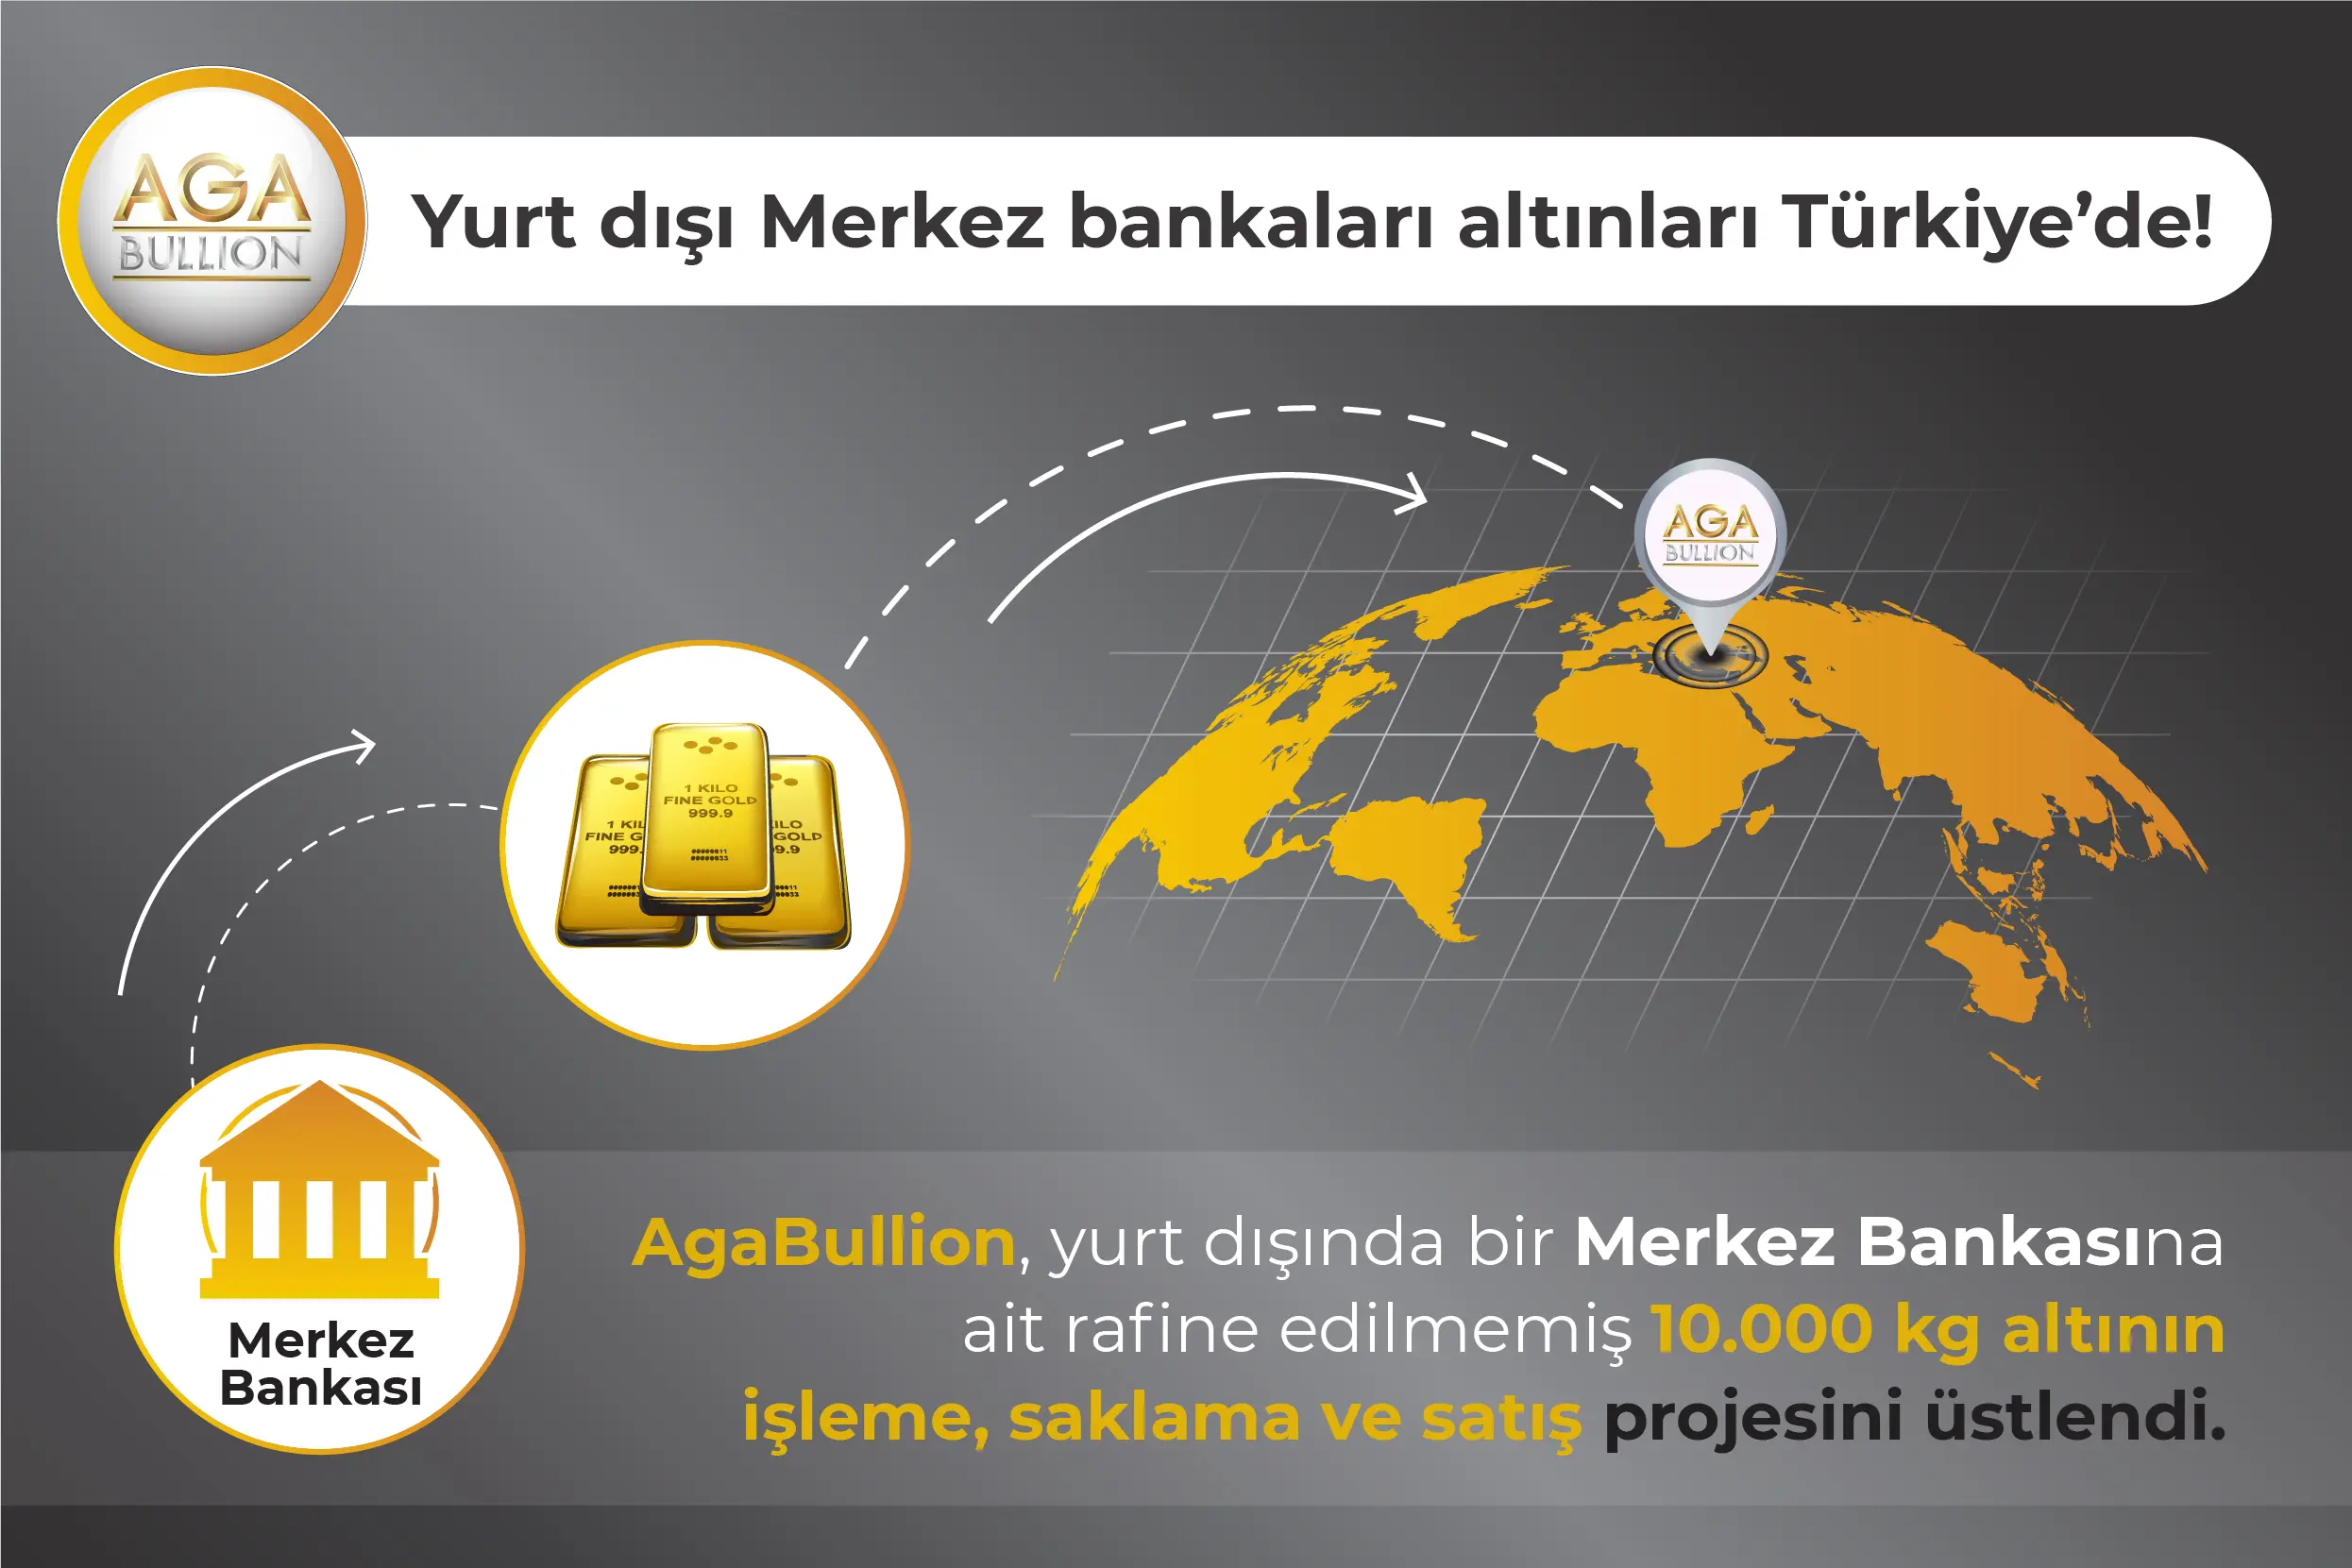 Yurt dışı Merkez bankaları altınları Türkiye'de!